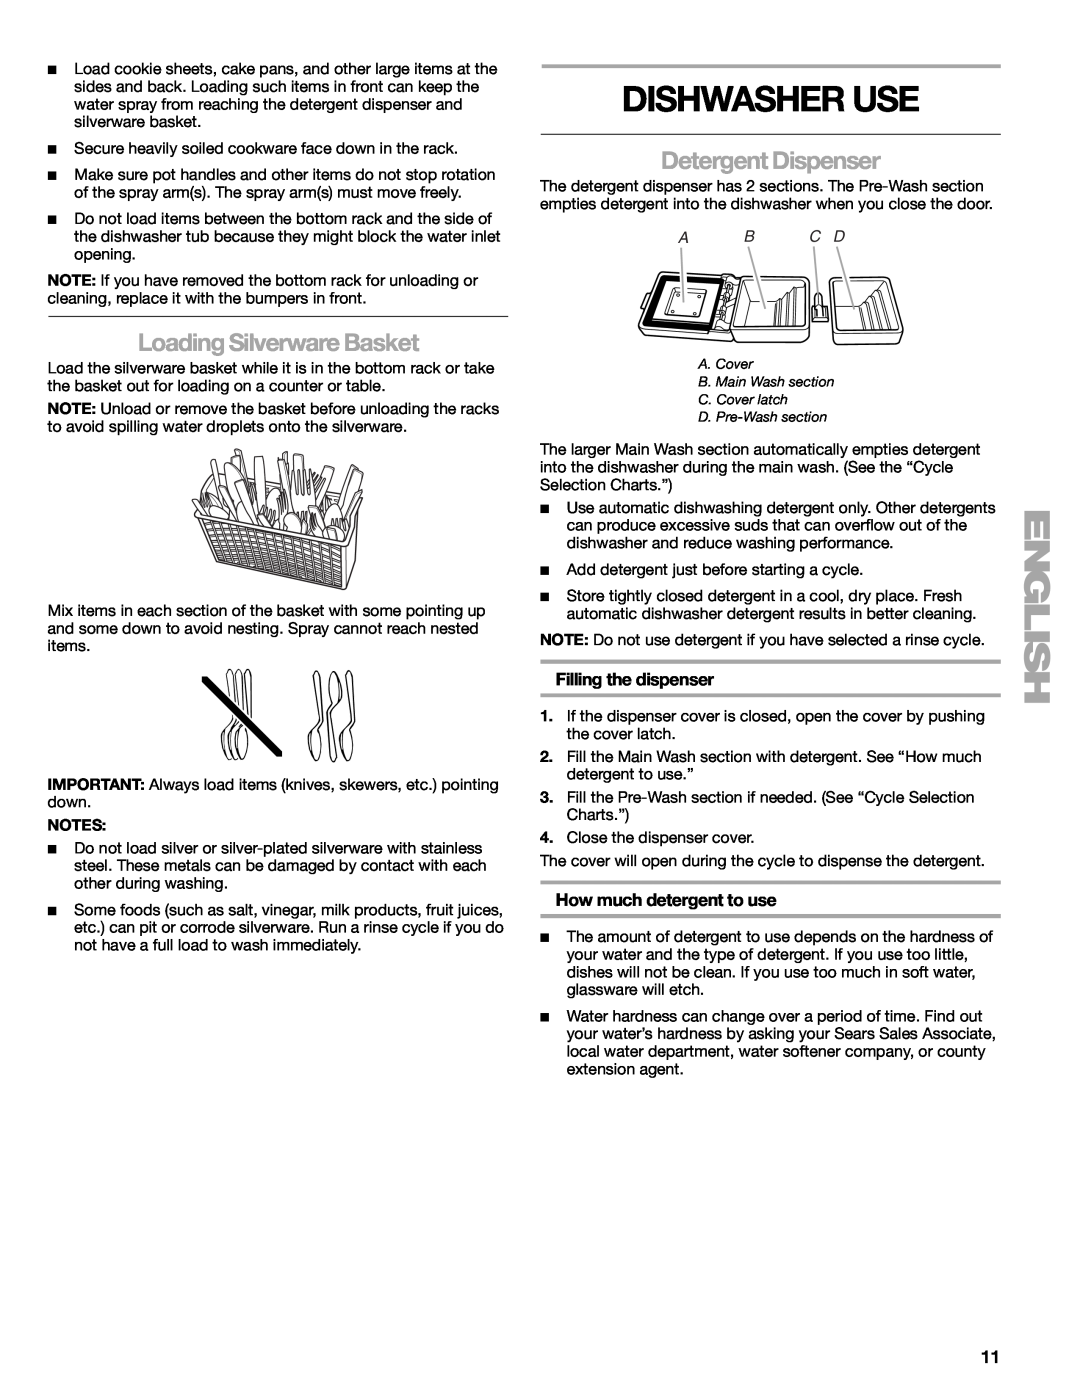 Kenmore 665.1771 manual Dishwasher Use, Loading Silverware Basket, Detergent Dispenser, Filling the dispenser, A B C D 